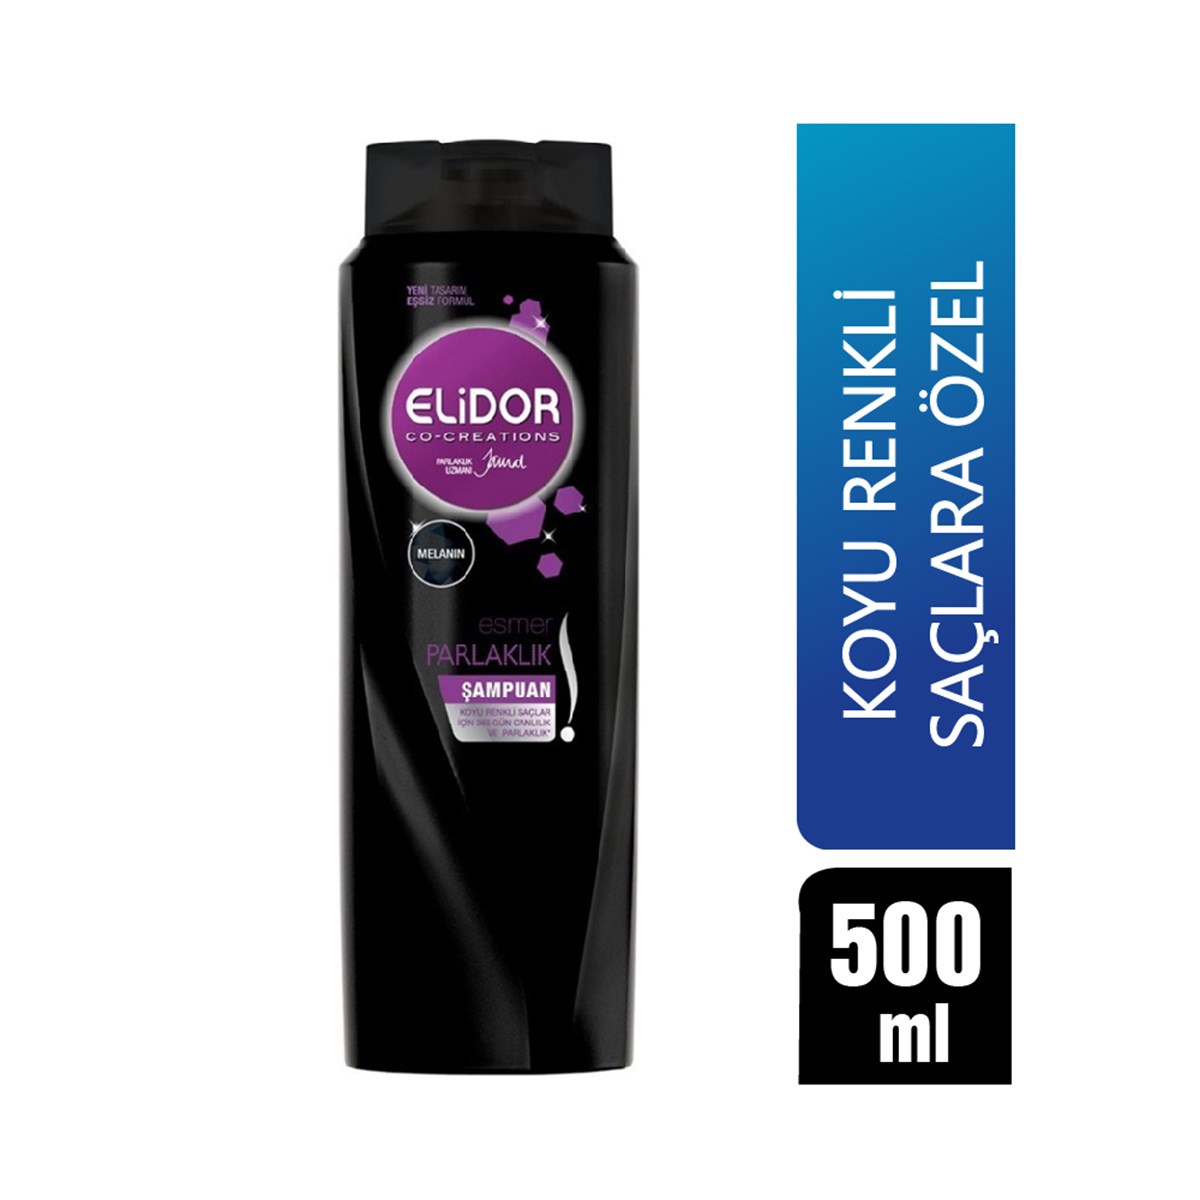 Elidor Esmer Parlaklık Şampuan 550 ml - Platin